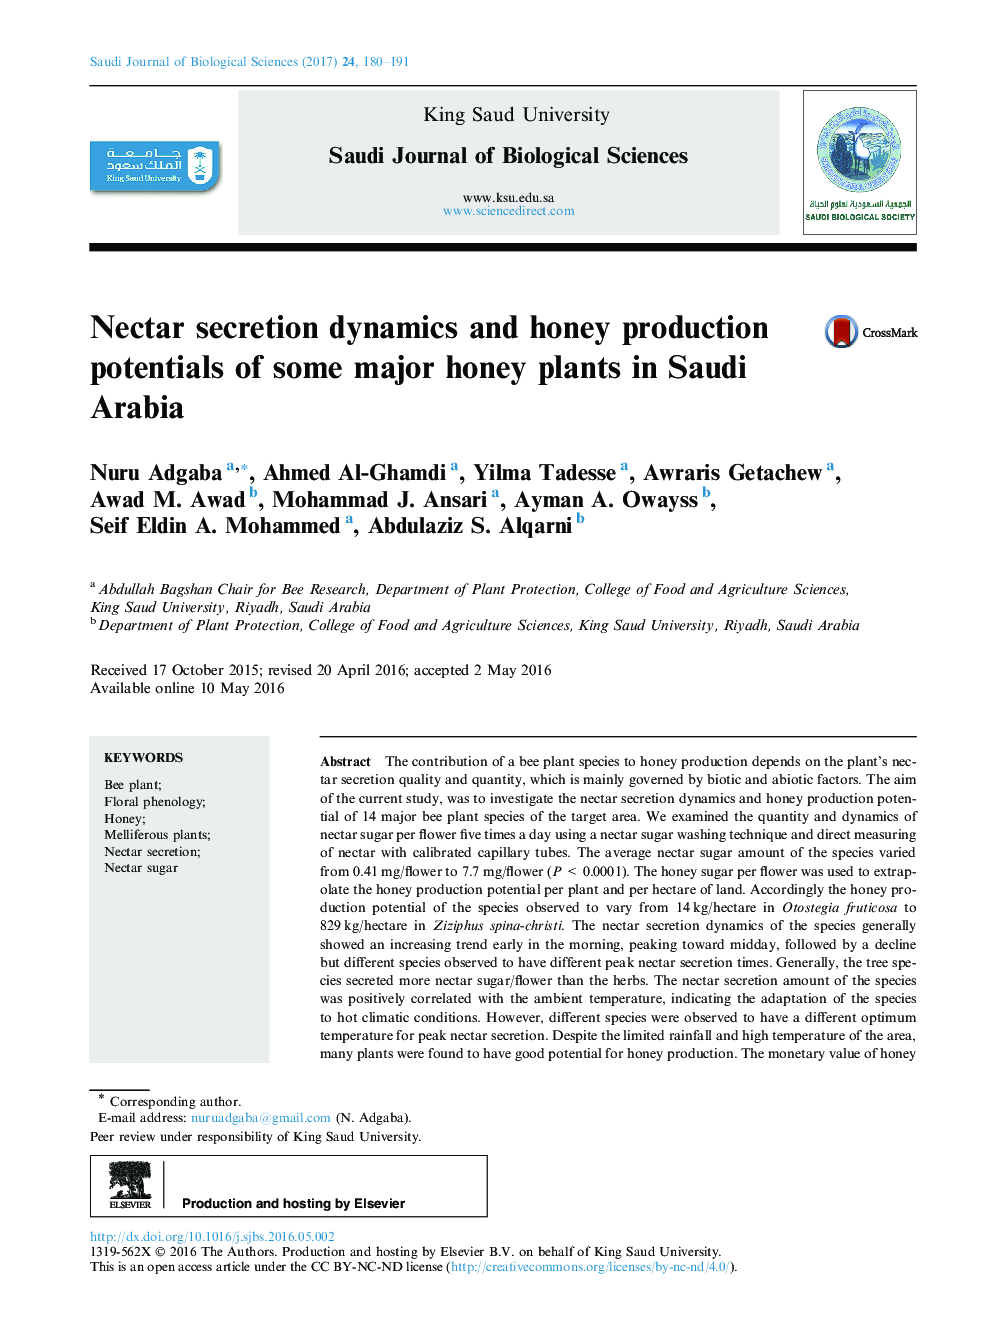 پدیده ترشح دژنرسانس شهد و پتانسیل تولید عسل برخی از گیاهان عسل در عربستان سعودی 